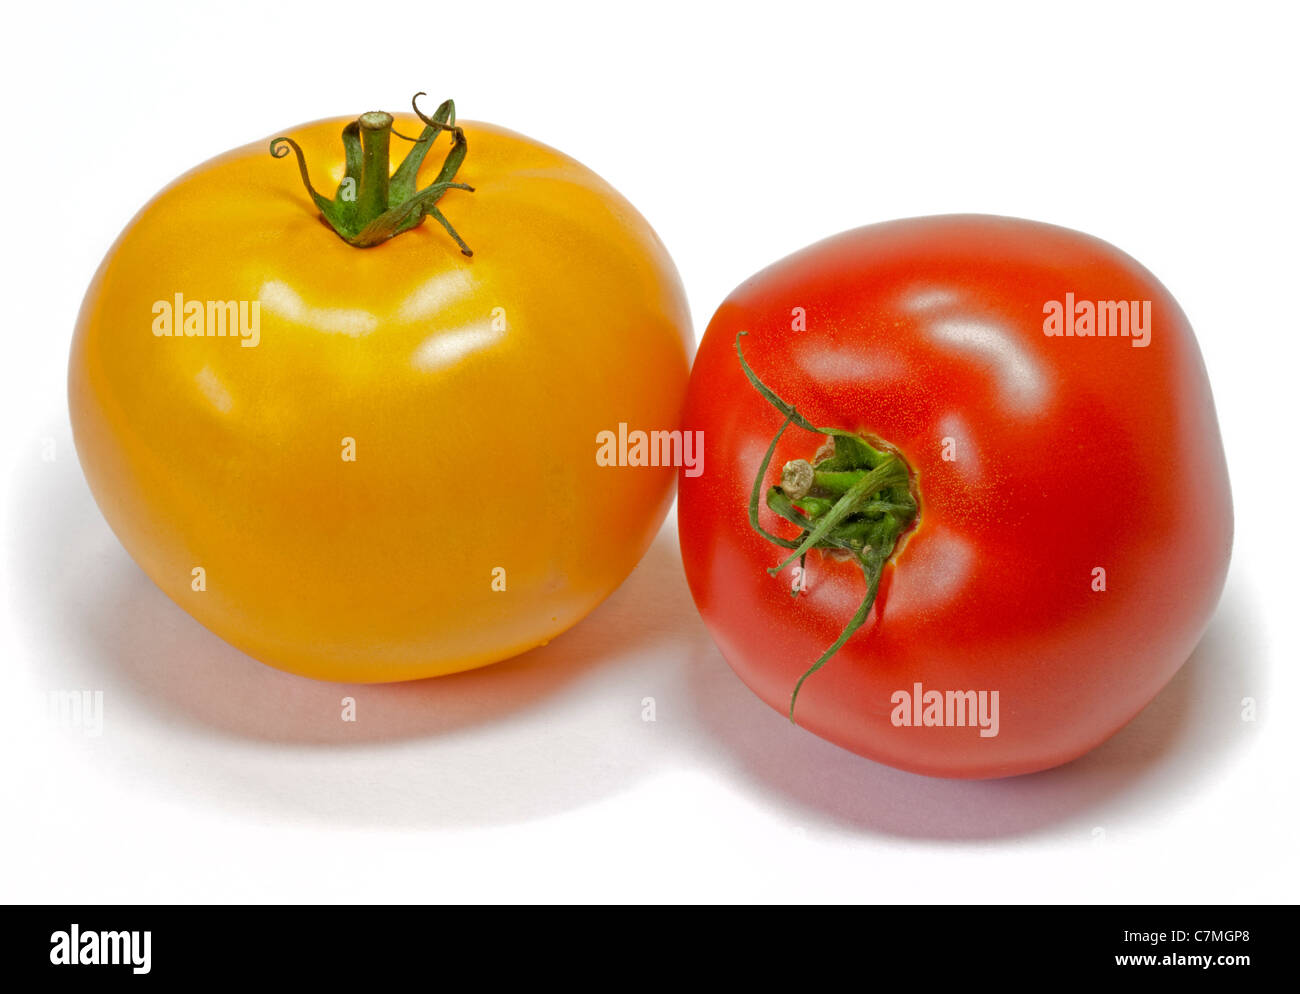 Tomates Beefsteak amarillo y rojo Foto de stock